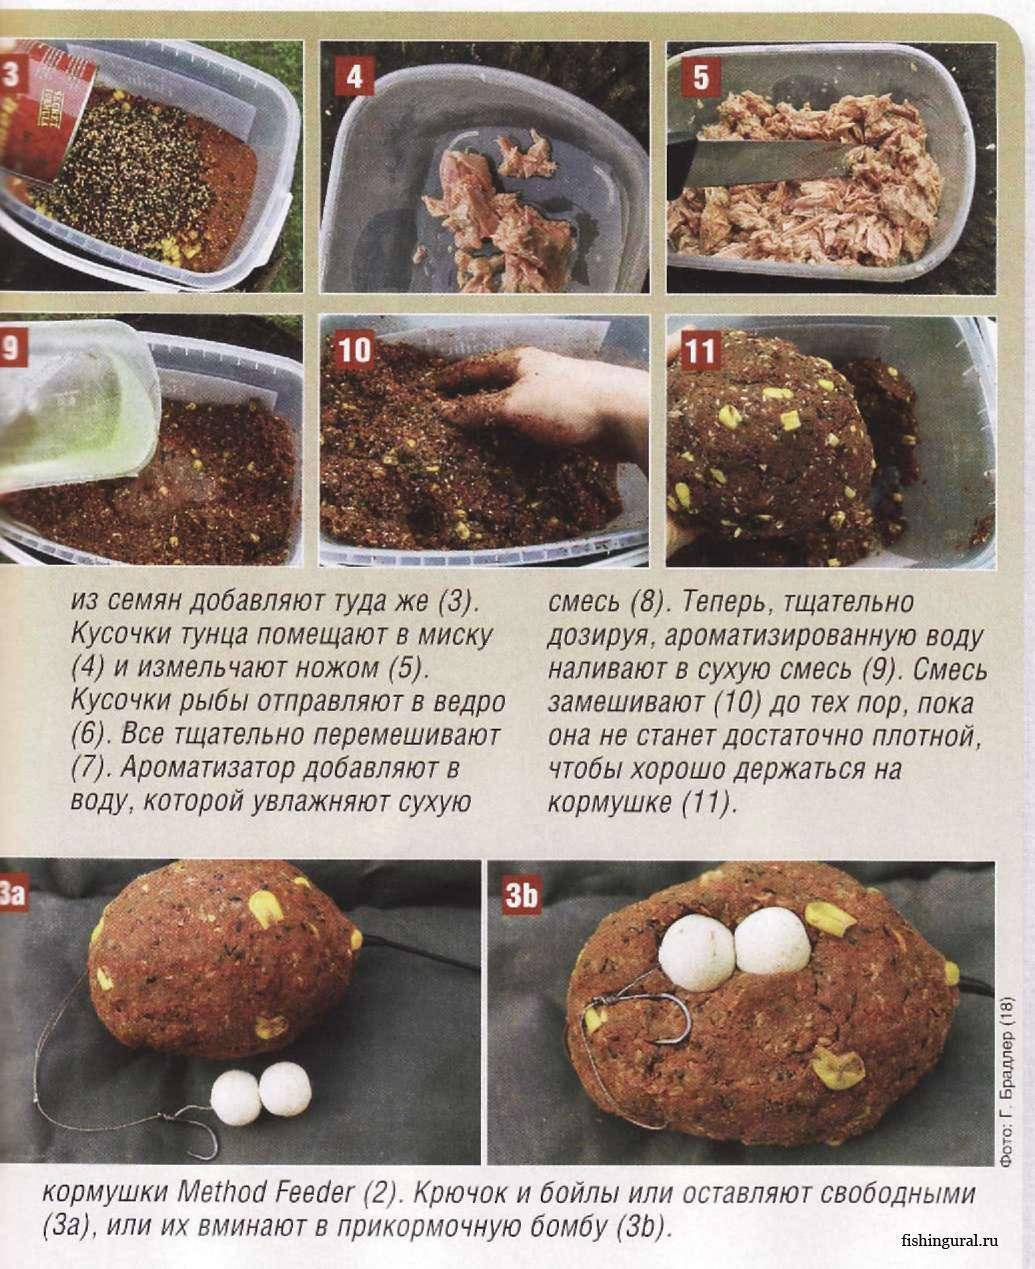 Прикормка для леща – домашние рецепты для приготовления своими руками